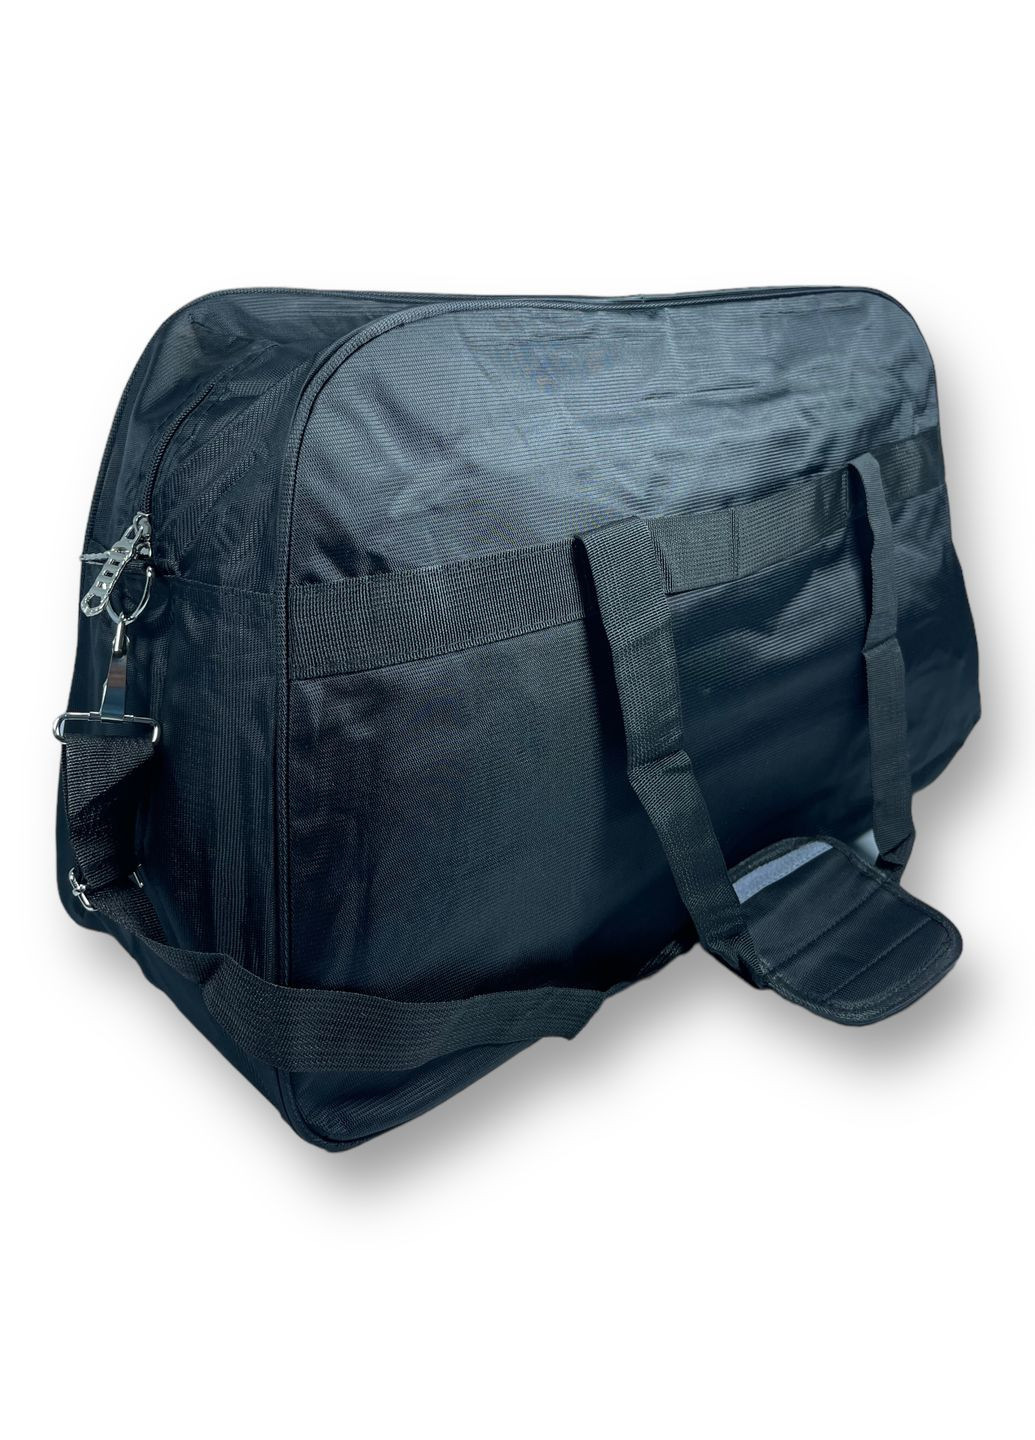 Дорожня сумка, 40 л,, 1 відділення, дві додаткових кишені, регульований з"ємний ремінь, розміри: 58*36*20 см, чорна Sports (268995068)